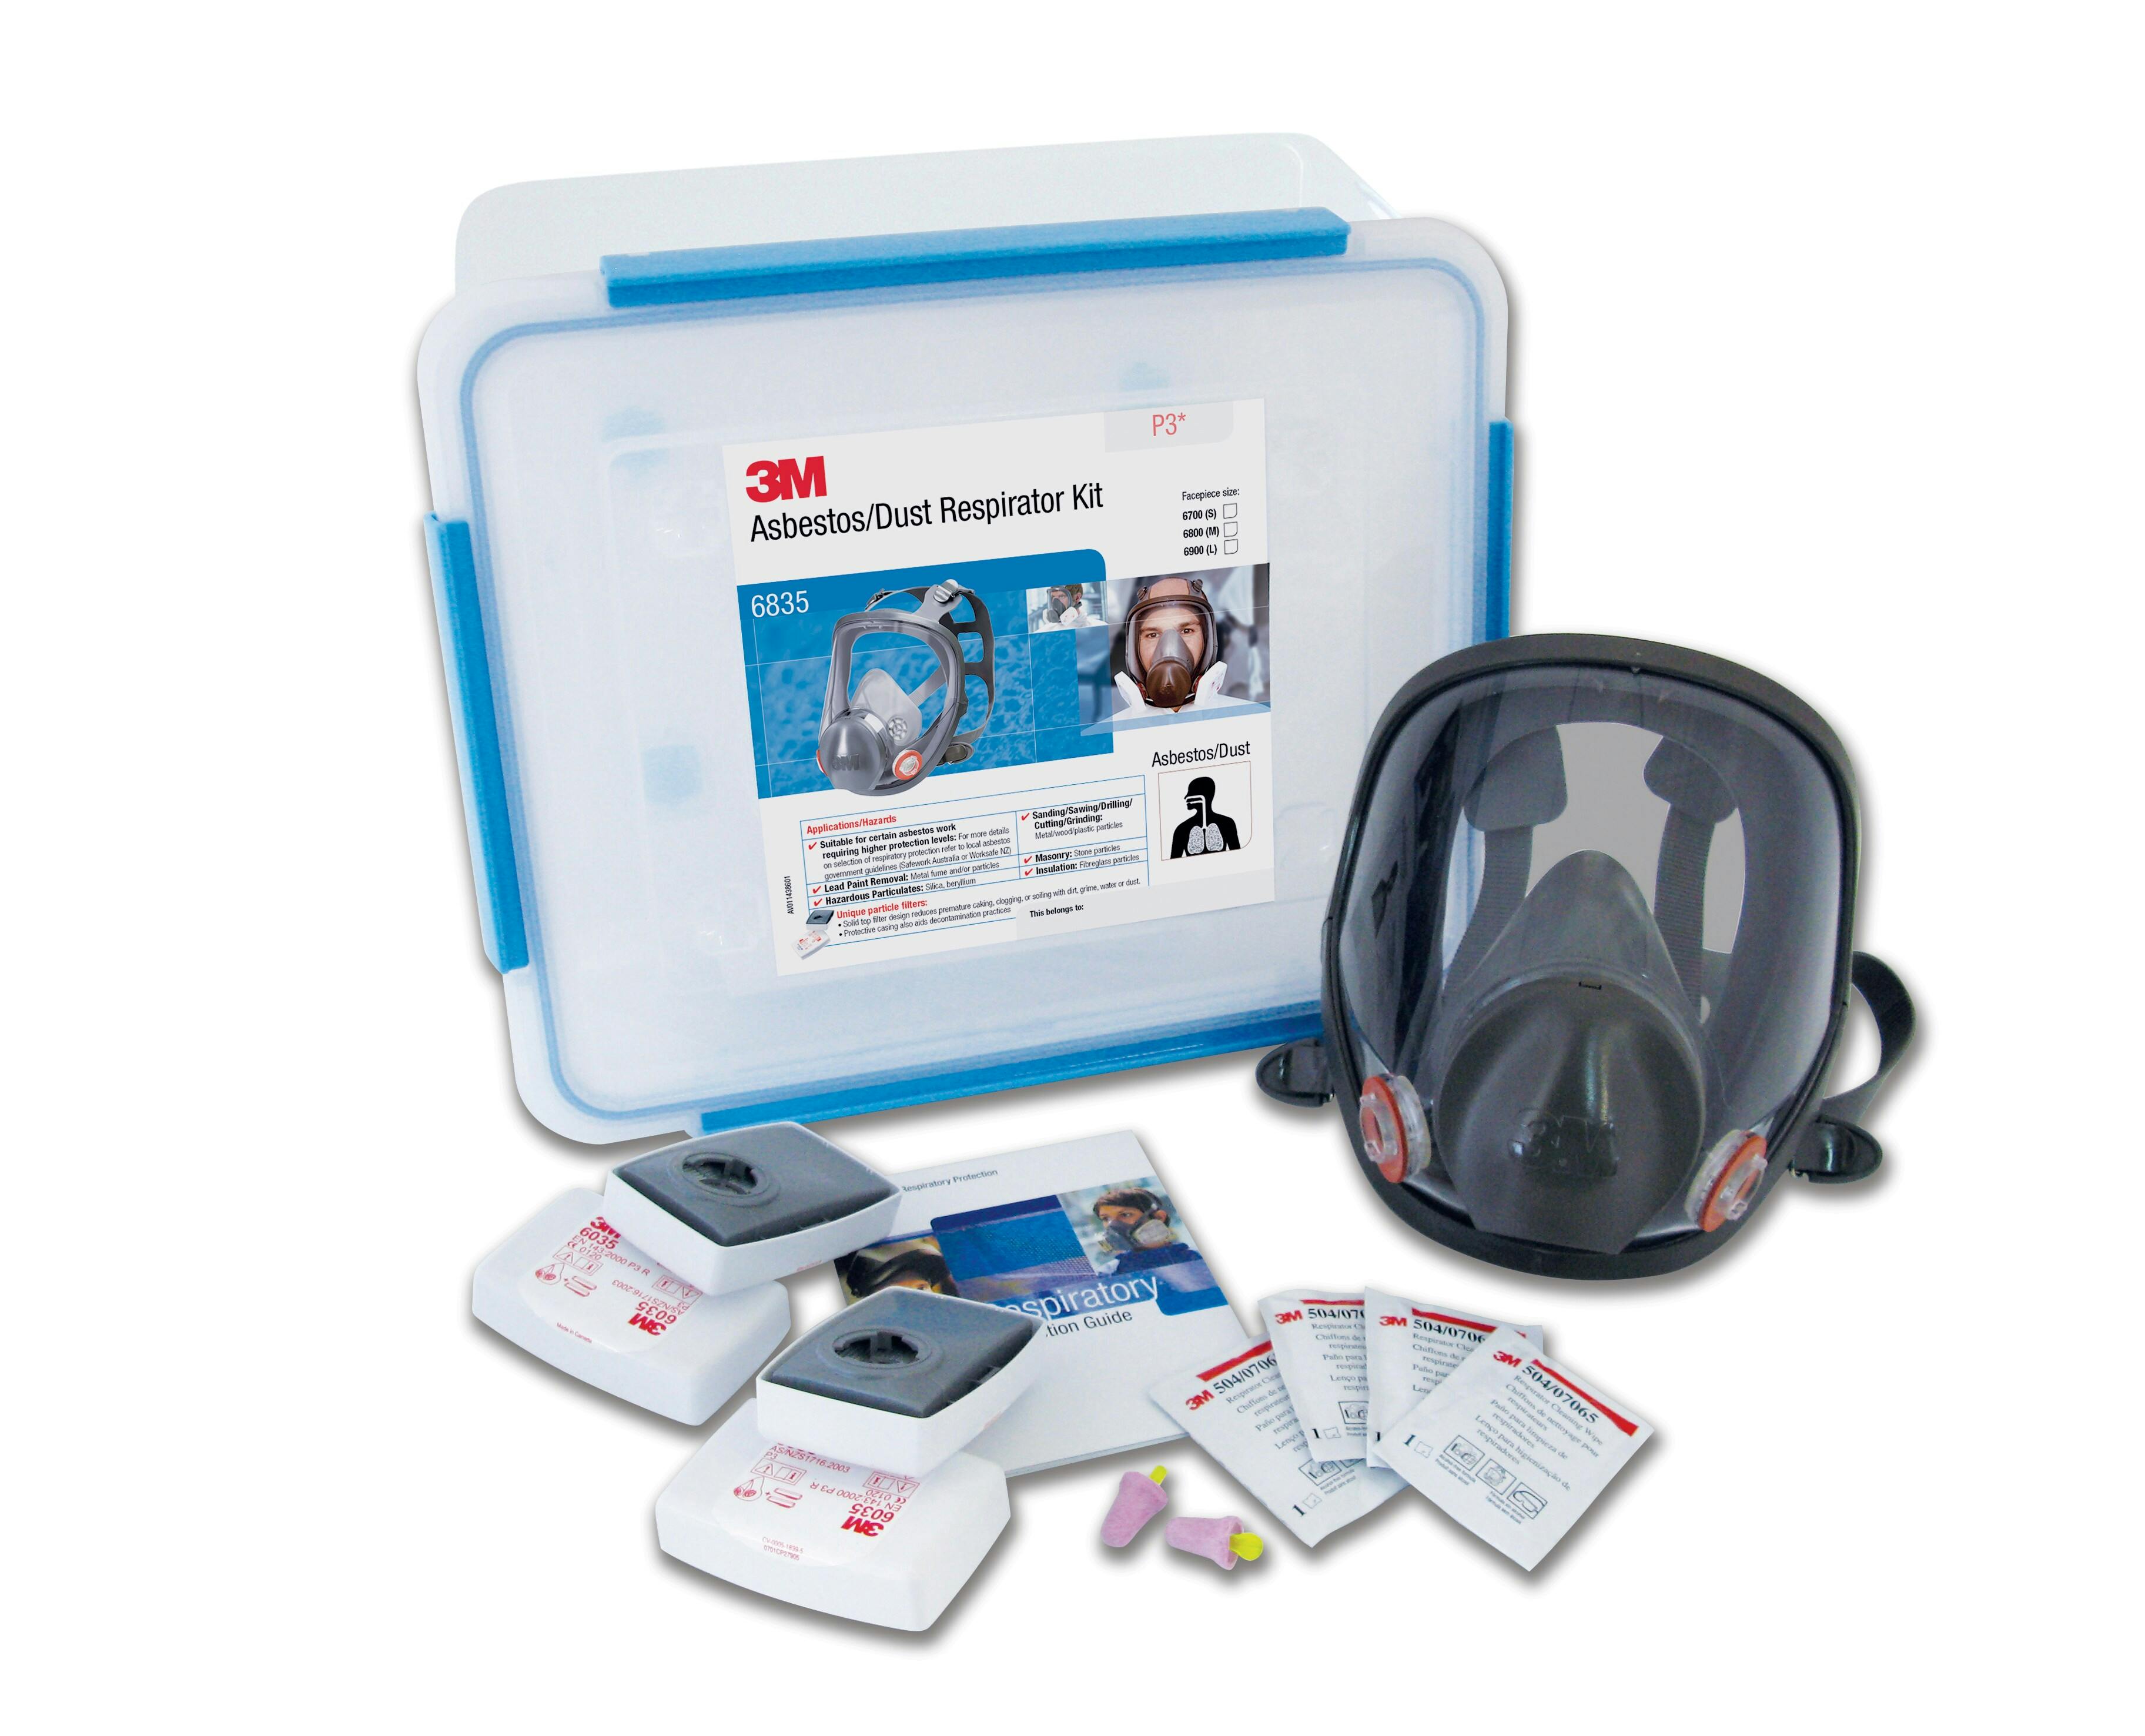 3M™ Asbestos/Dust Respirator Kit 6835, P3, Large, 1 Kit/Carton